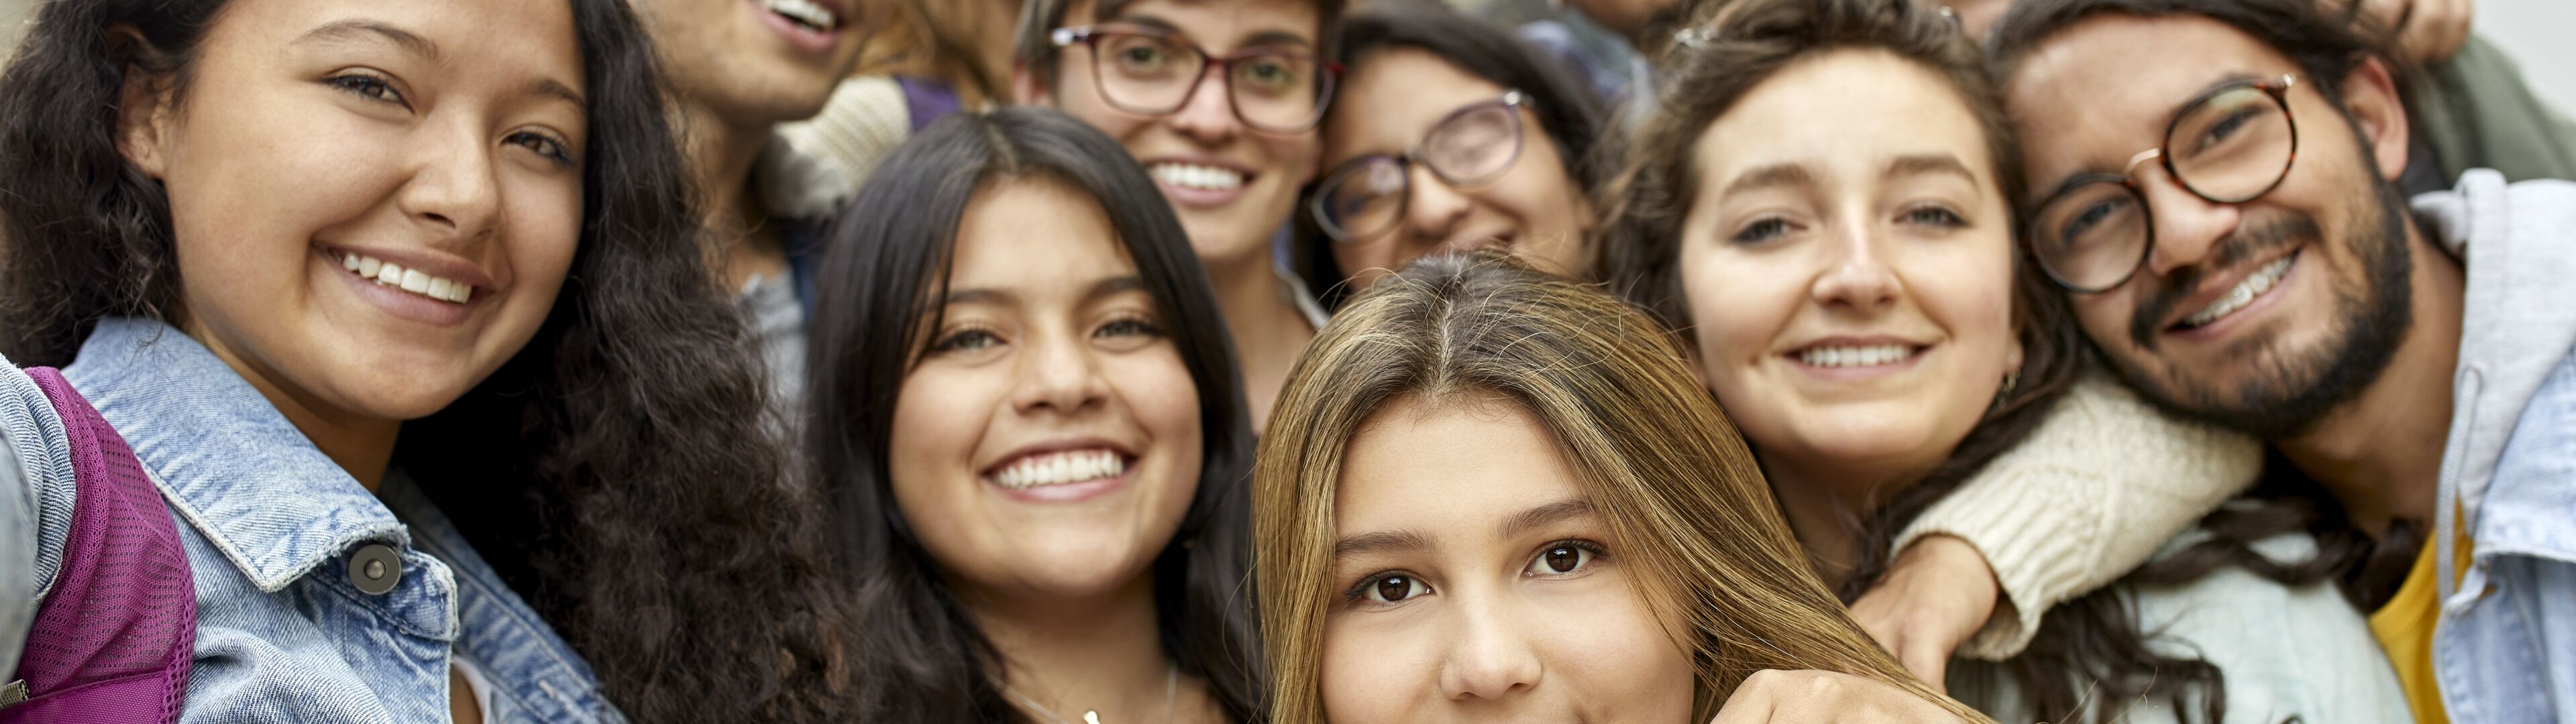 Un alegre grupo de estudiantes diversos posando juntos para una selfie cercana.